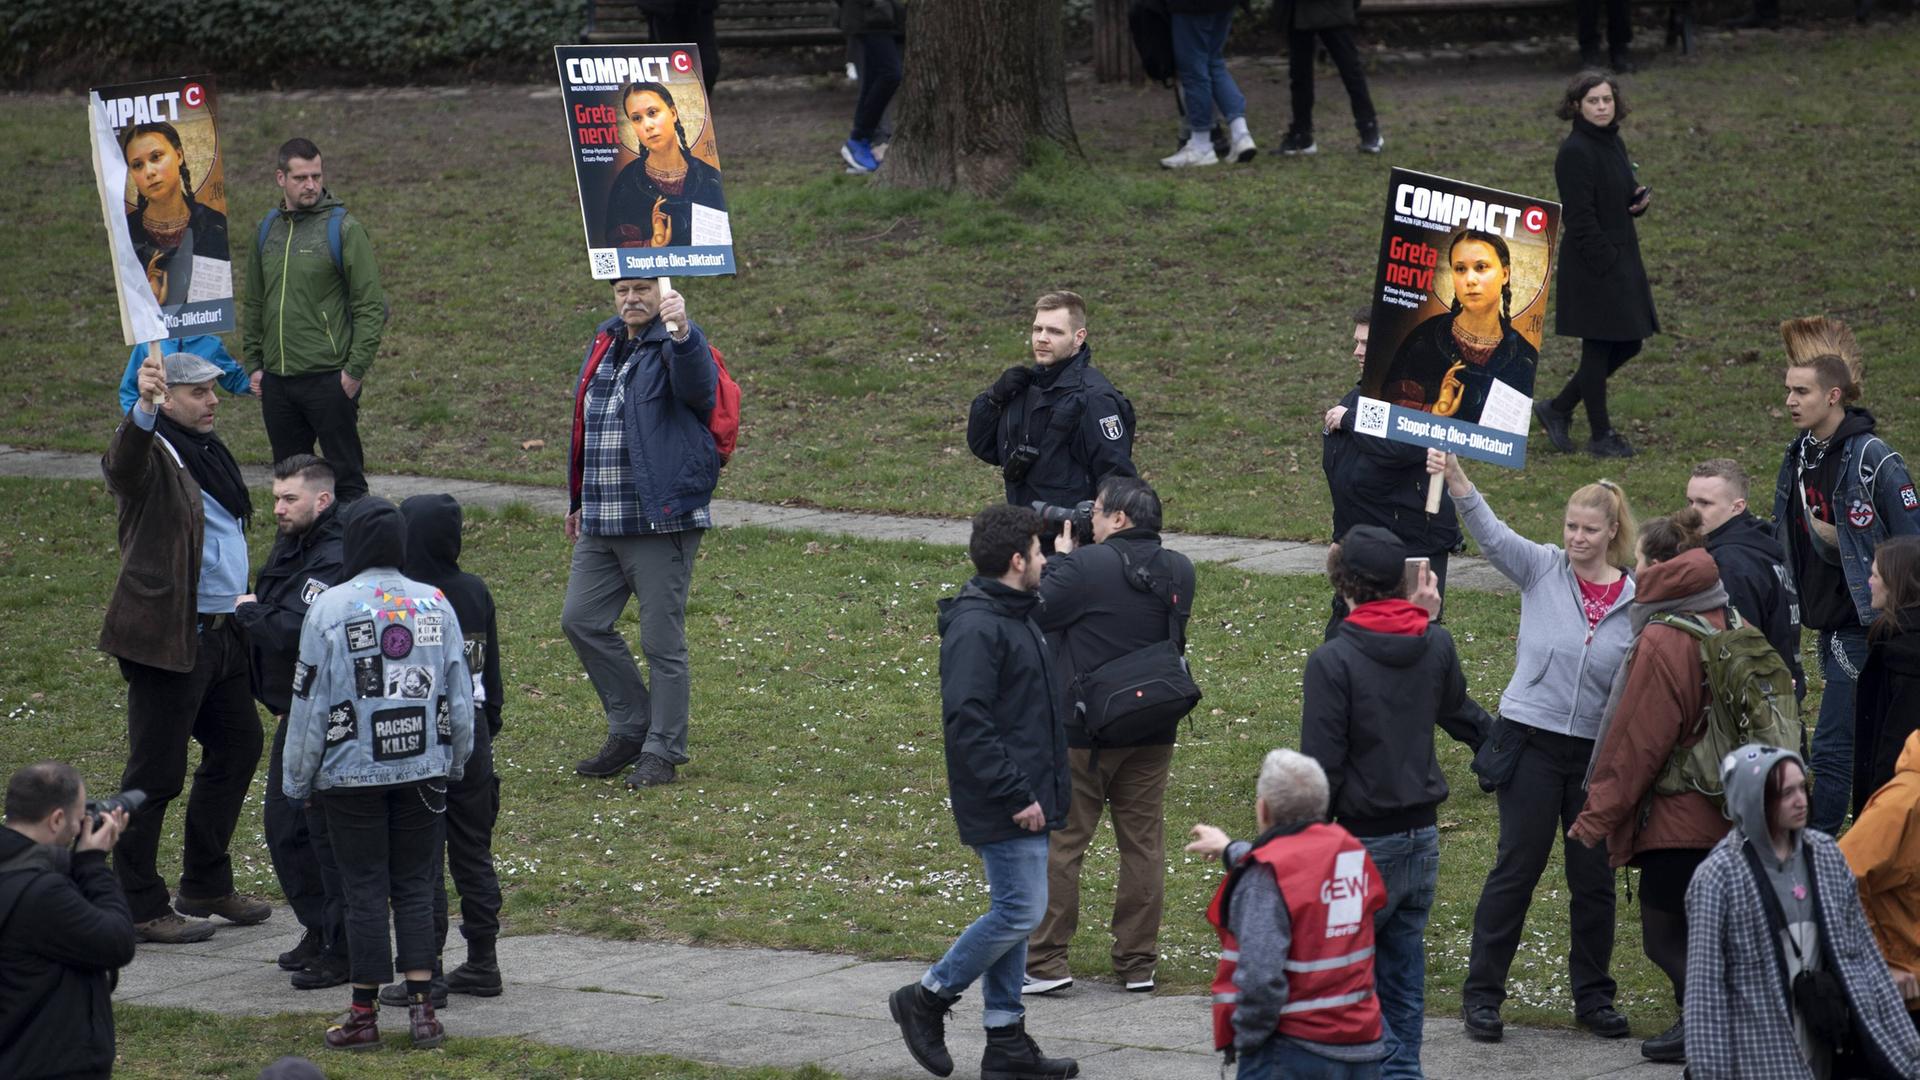 Verstreute Einzelpersonen halten am Rand einer Demonstration Bilder hoch, auf denen die Klimaaktivistin Greta Thunberg und der Schriftzug "Greta nervt" zu sehen ist.